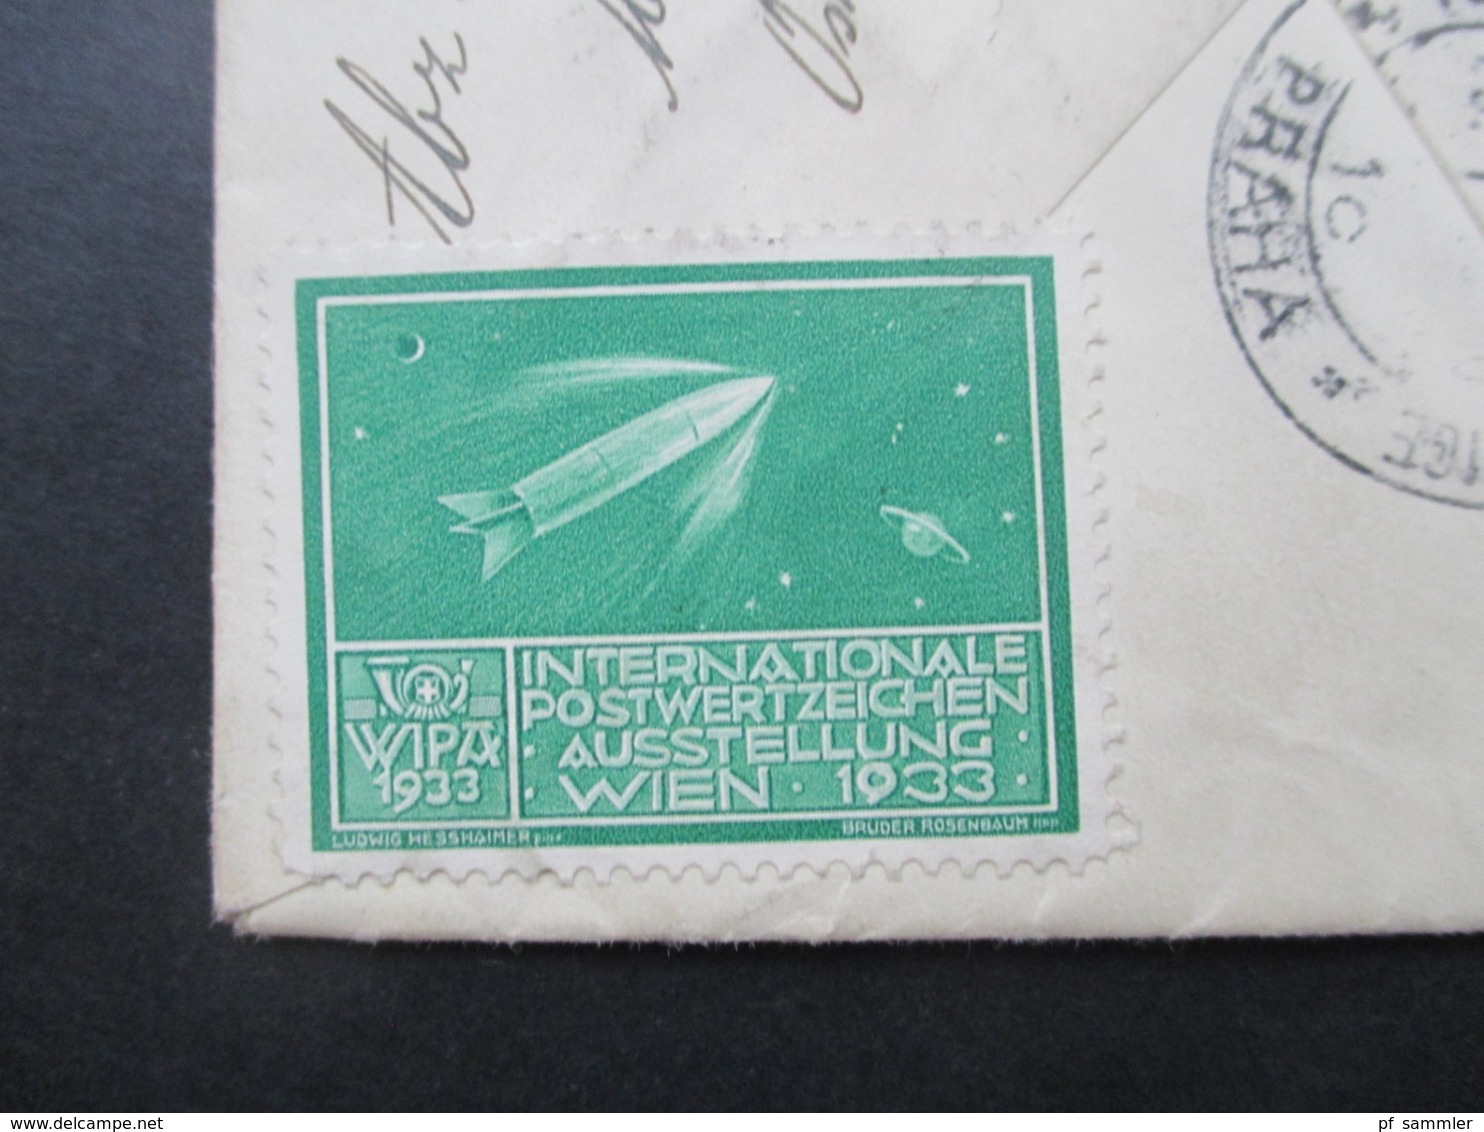 Niederlandisch Indie 1933 Luftpost von Medan über Rom nach Prag rückseitig 3 Vignetten / Reklamemarken Wipa 1933